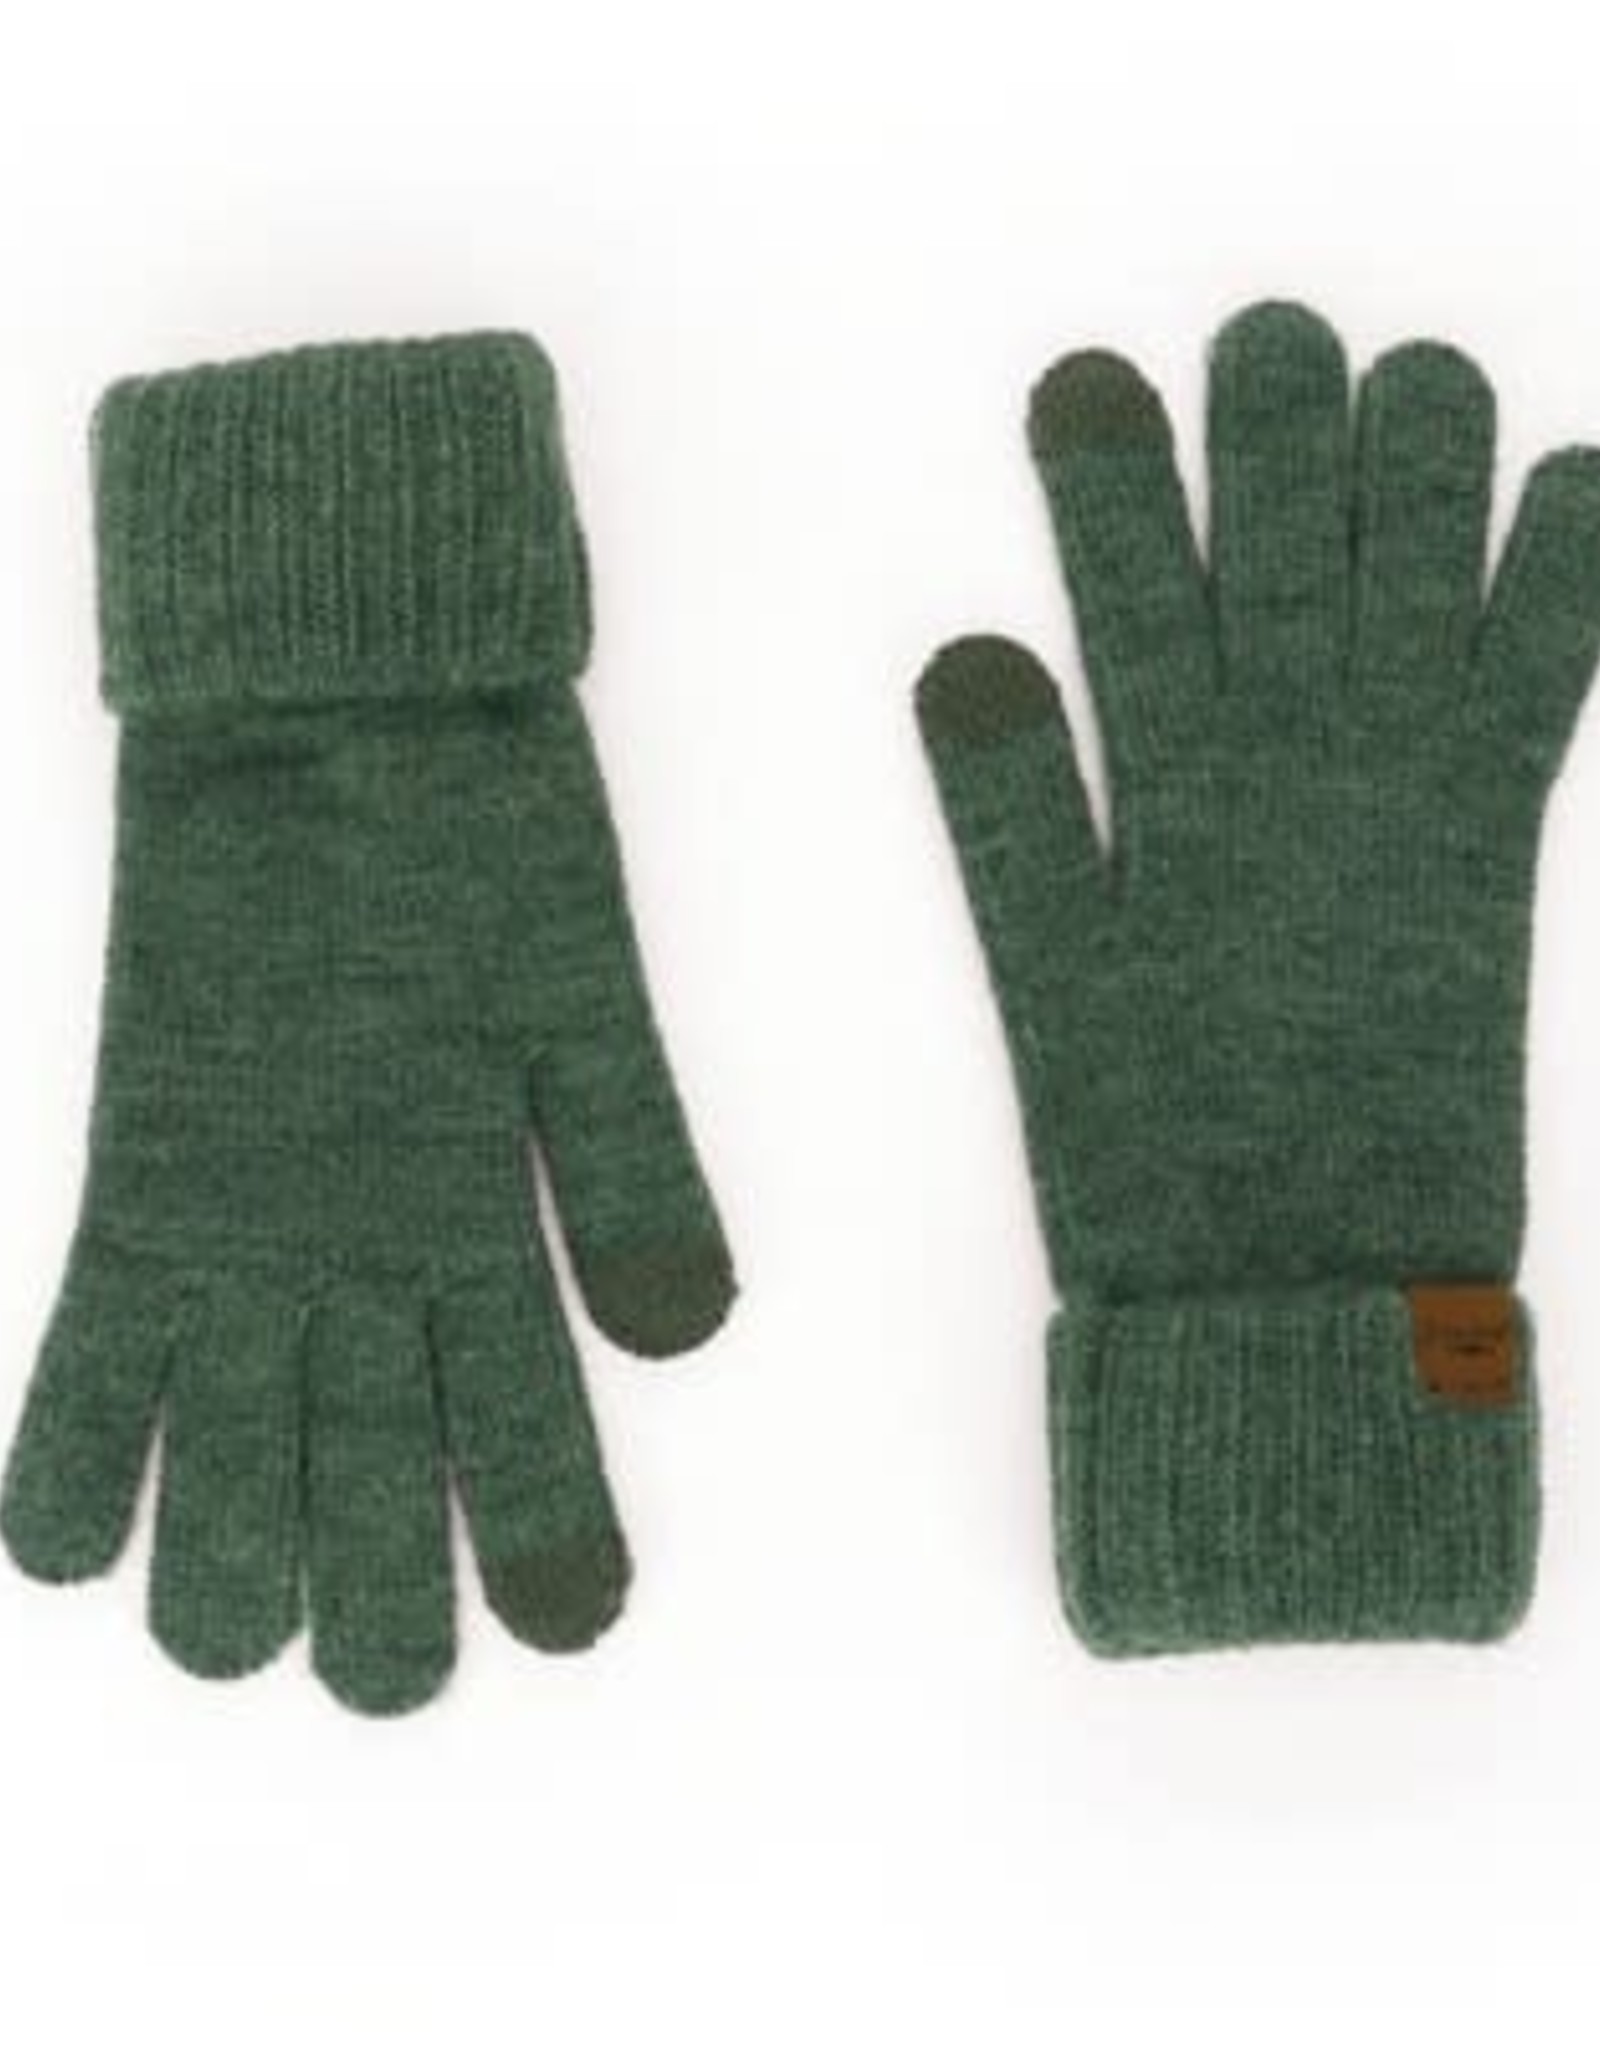 DM Merchandising MAINSTAY CUFF GLOVES - warm knit